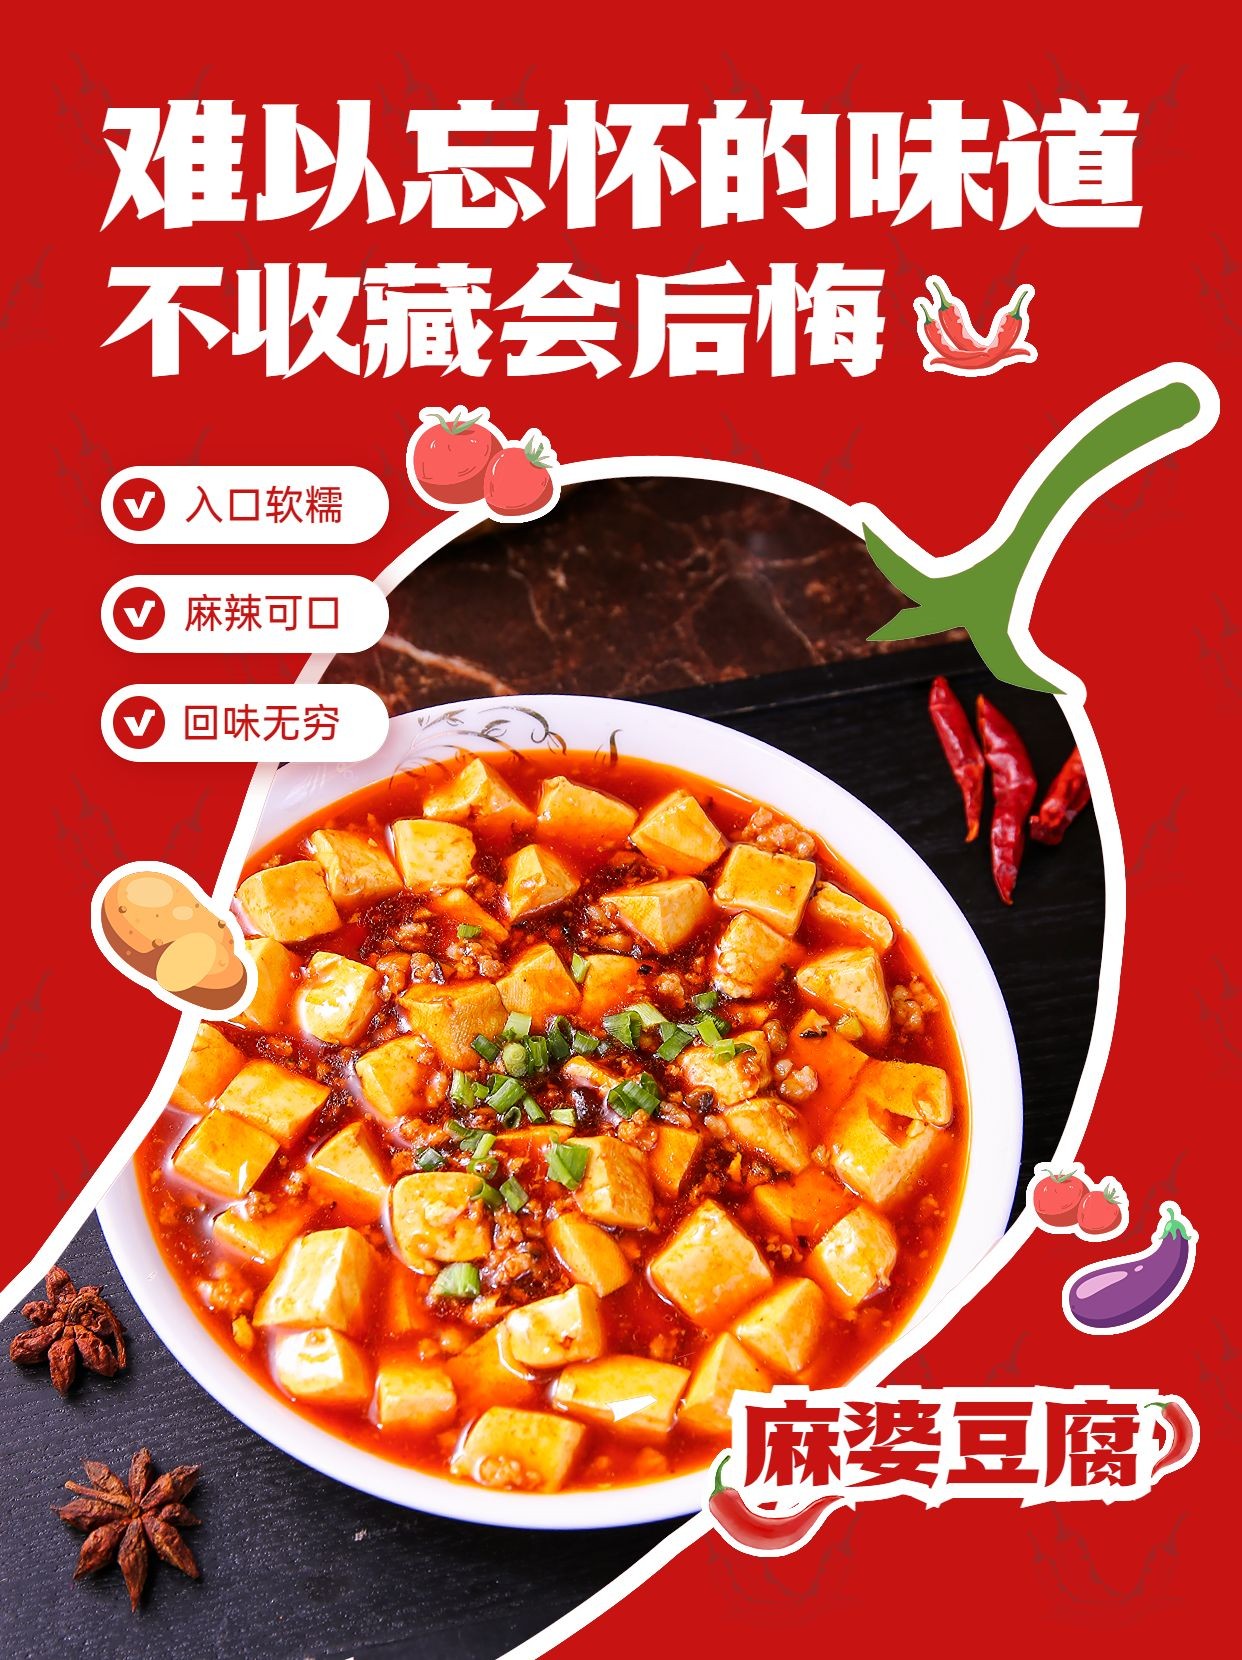 创意手绘风餐饮川菜产品营销宣传小红书配图预览效果